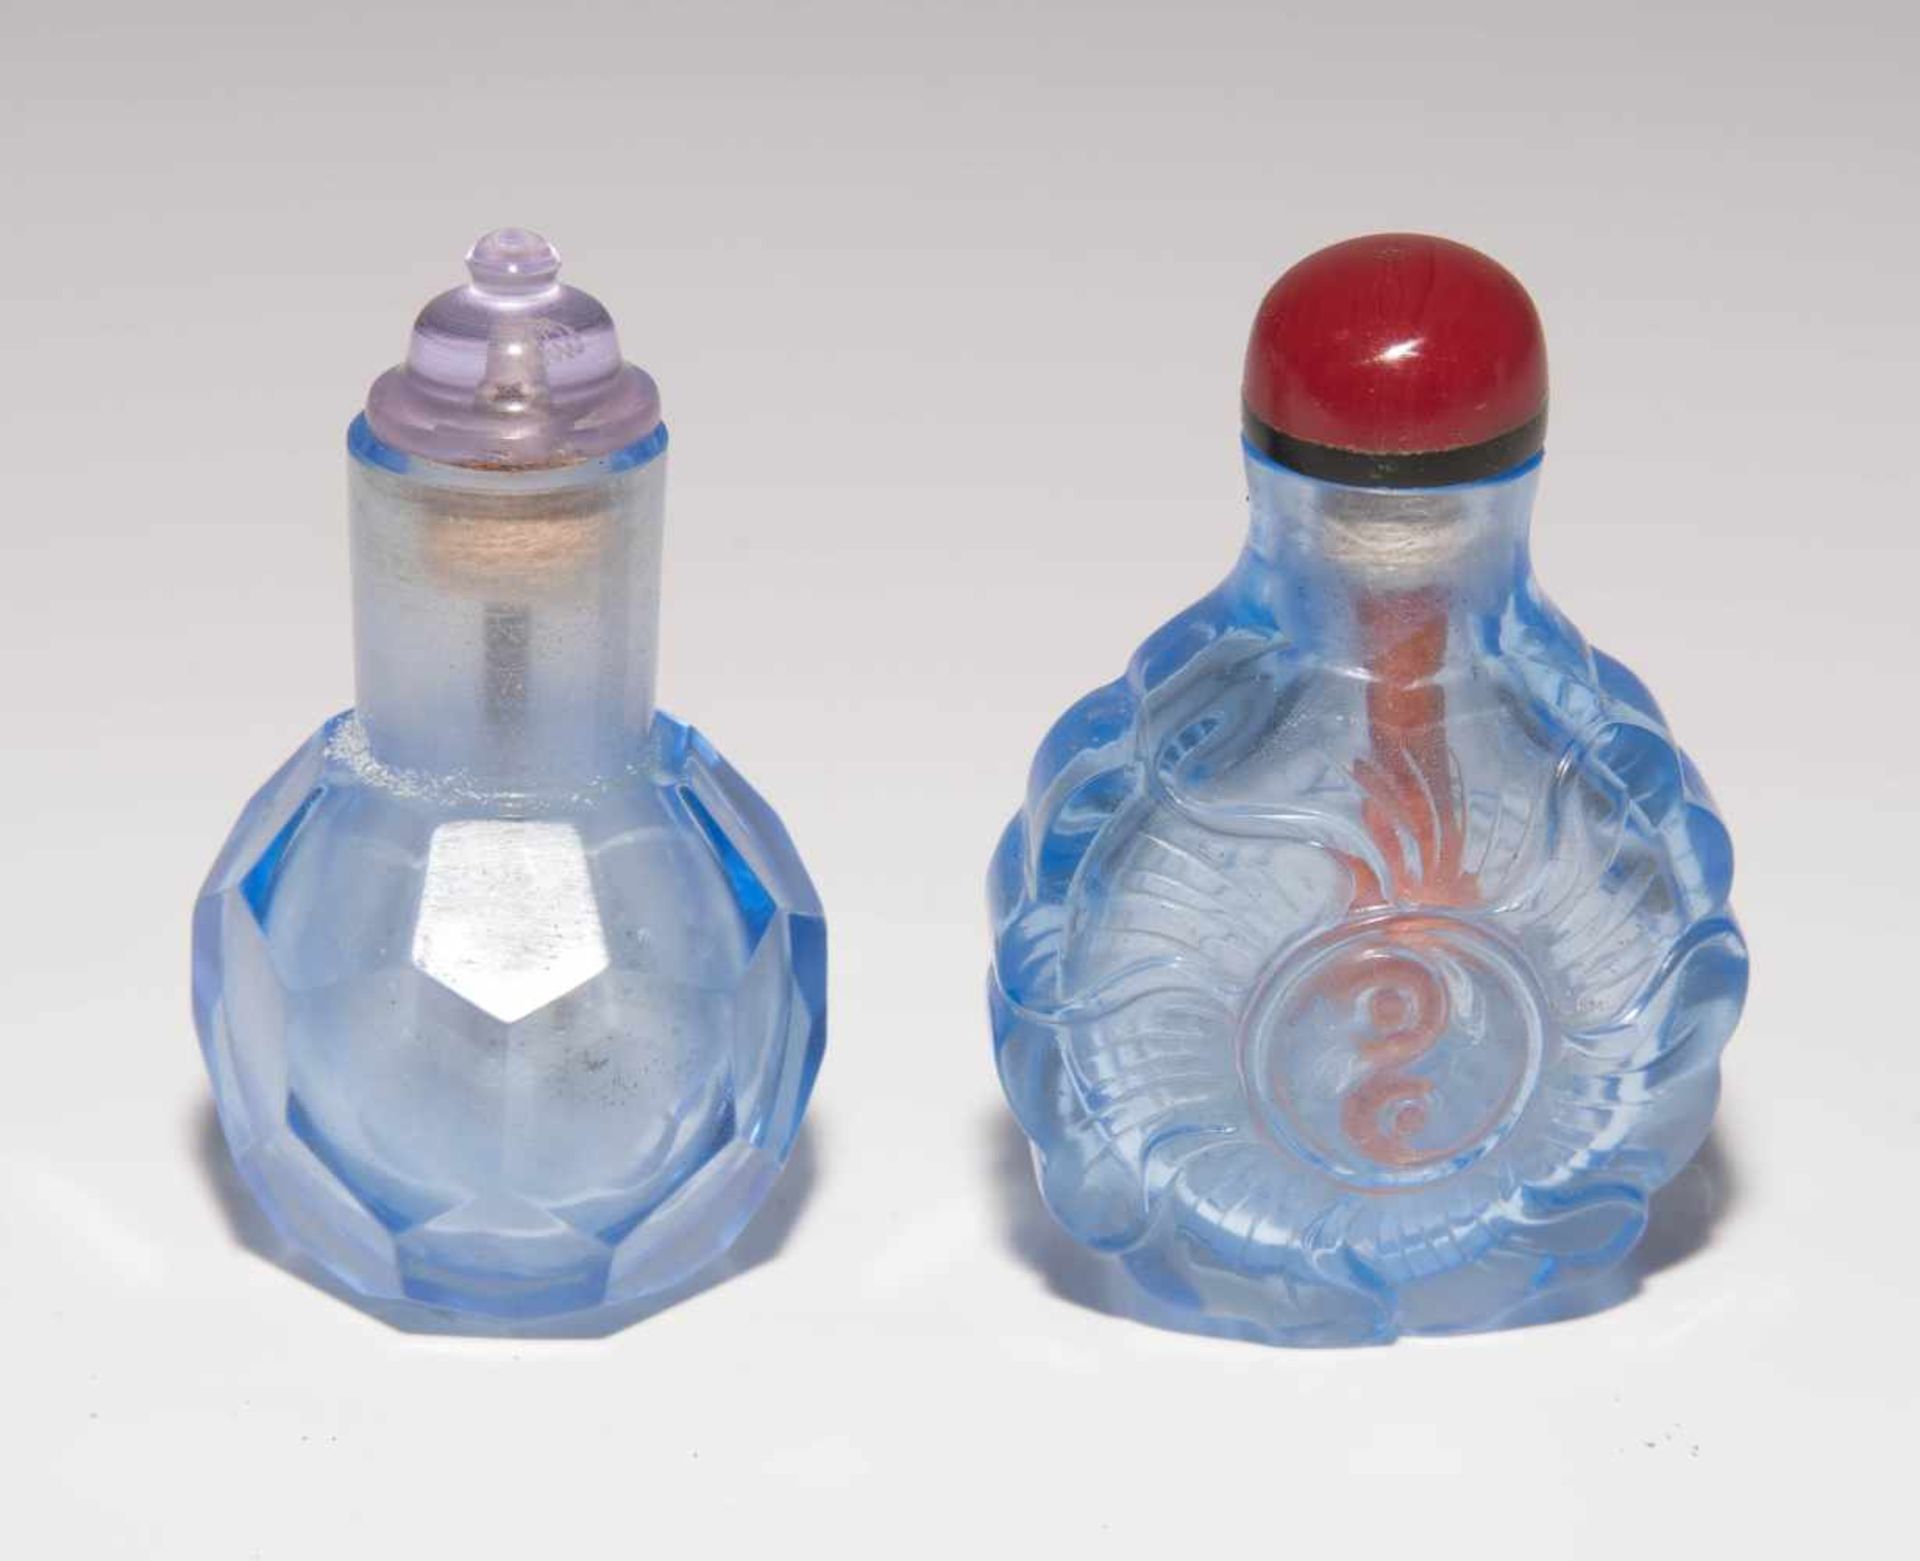 6 Glas Snuff BottlesChina. Hellblaues, transparentes Glas. Ein Doppel-Snuff Bottle, zwei mit - Bild 10 aus 22